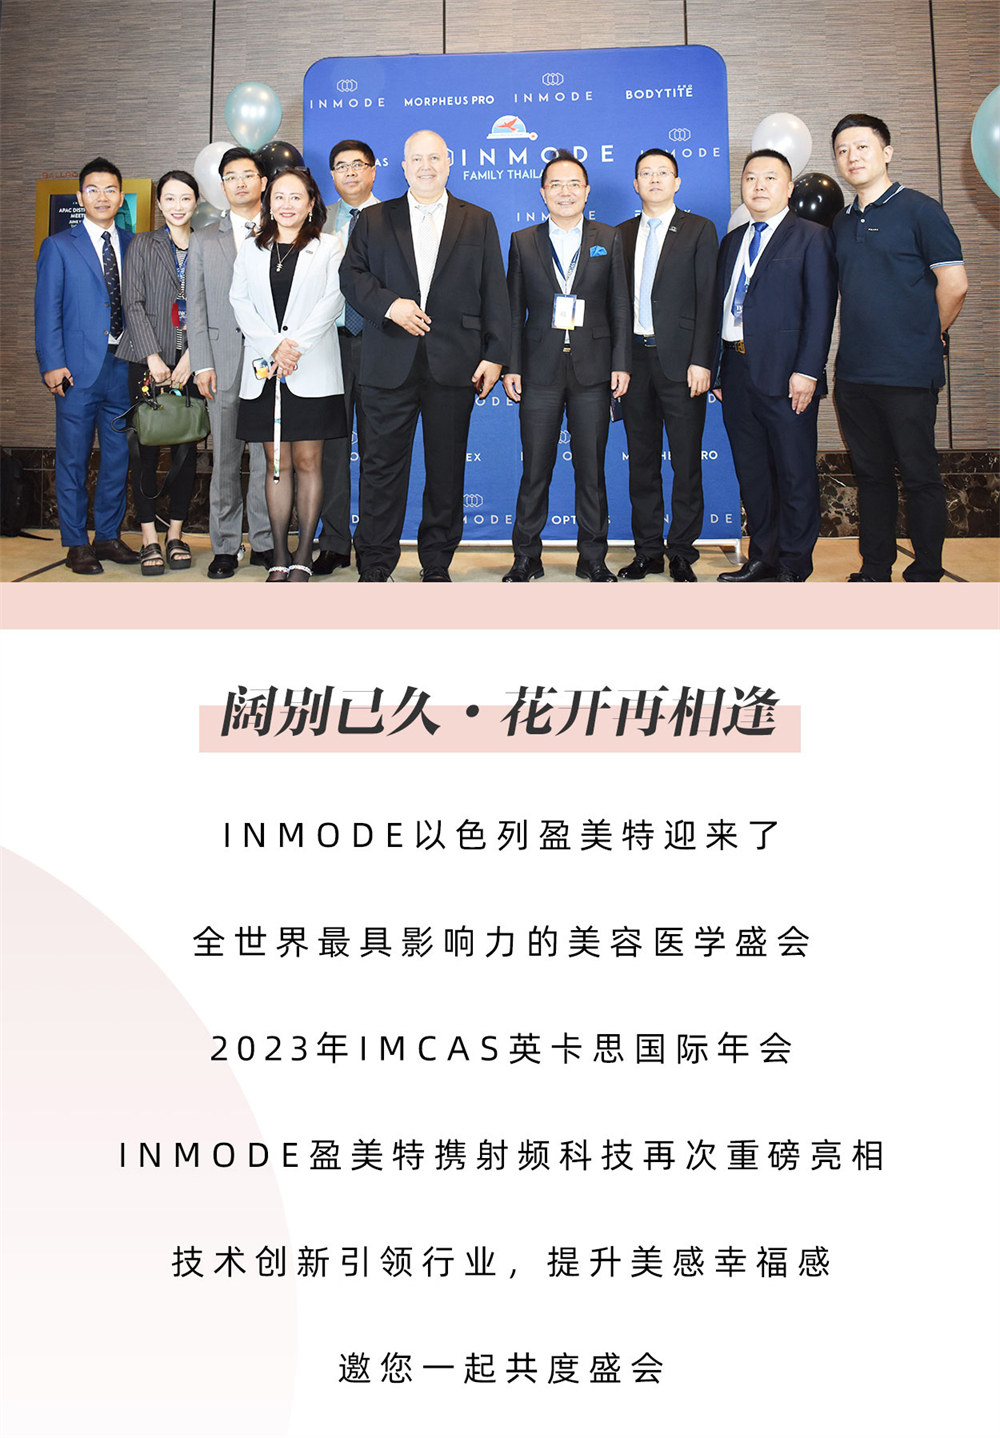 IMCAS国际年会 · INMODE美业巨舰实力出圈